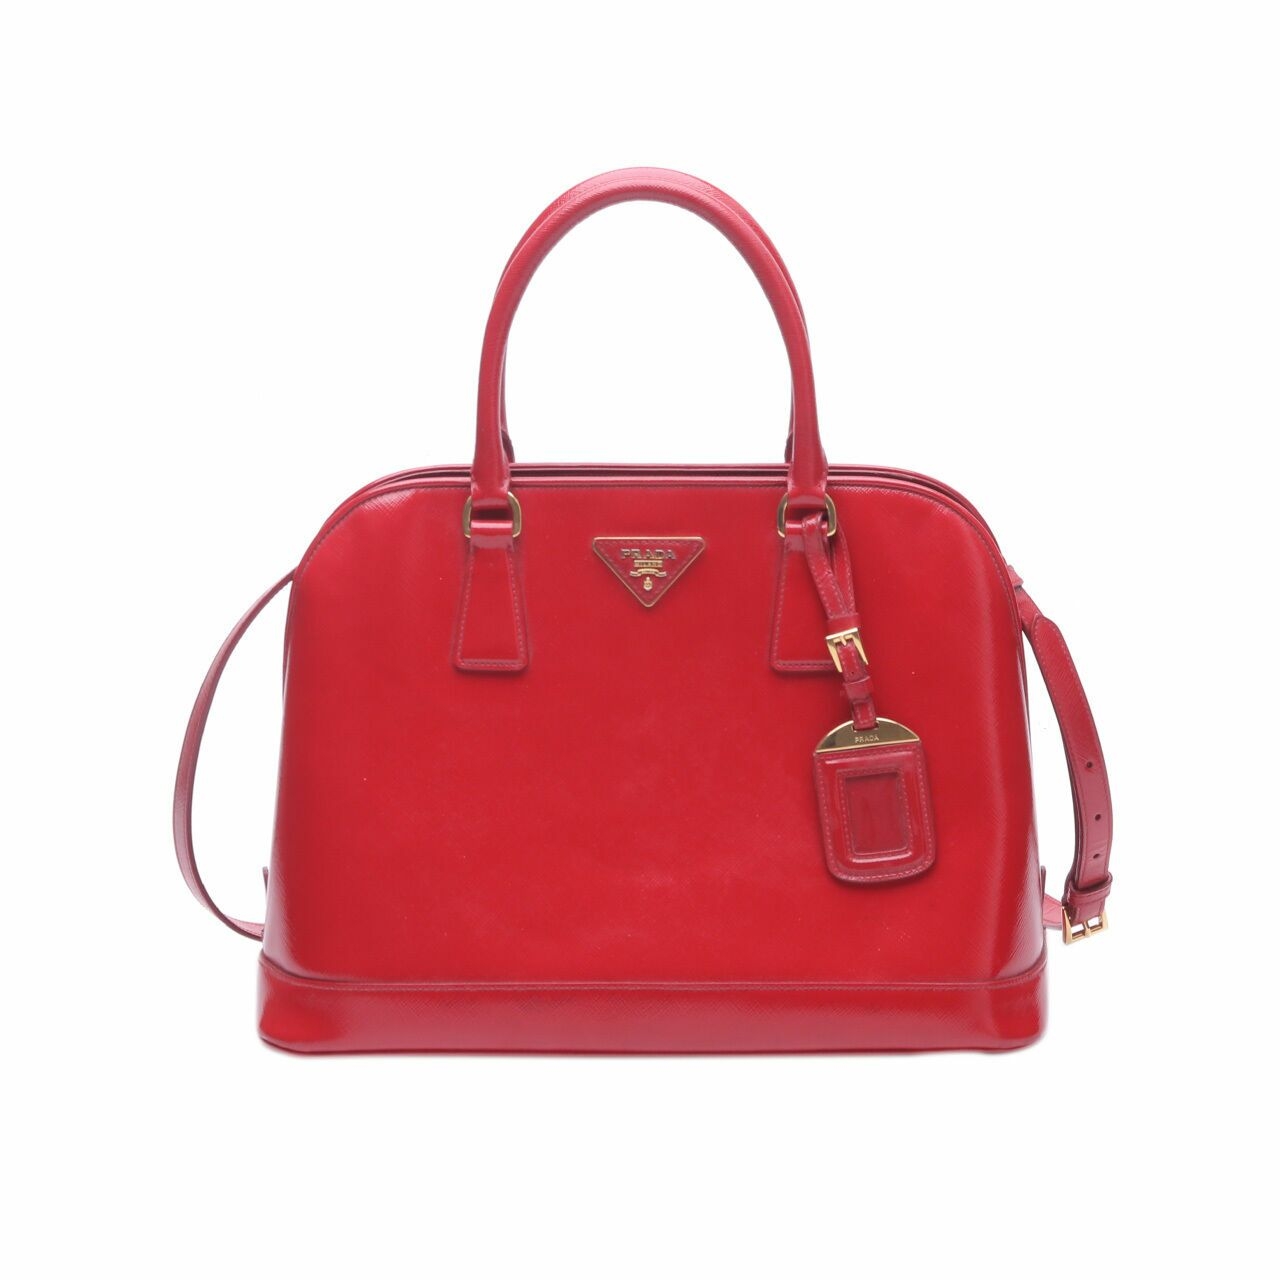 Prada Saffiano Vernic Lux Rosso Red 2way Satchel Bag